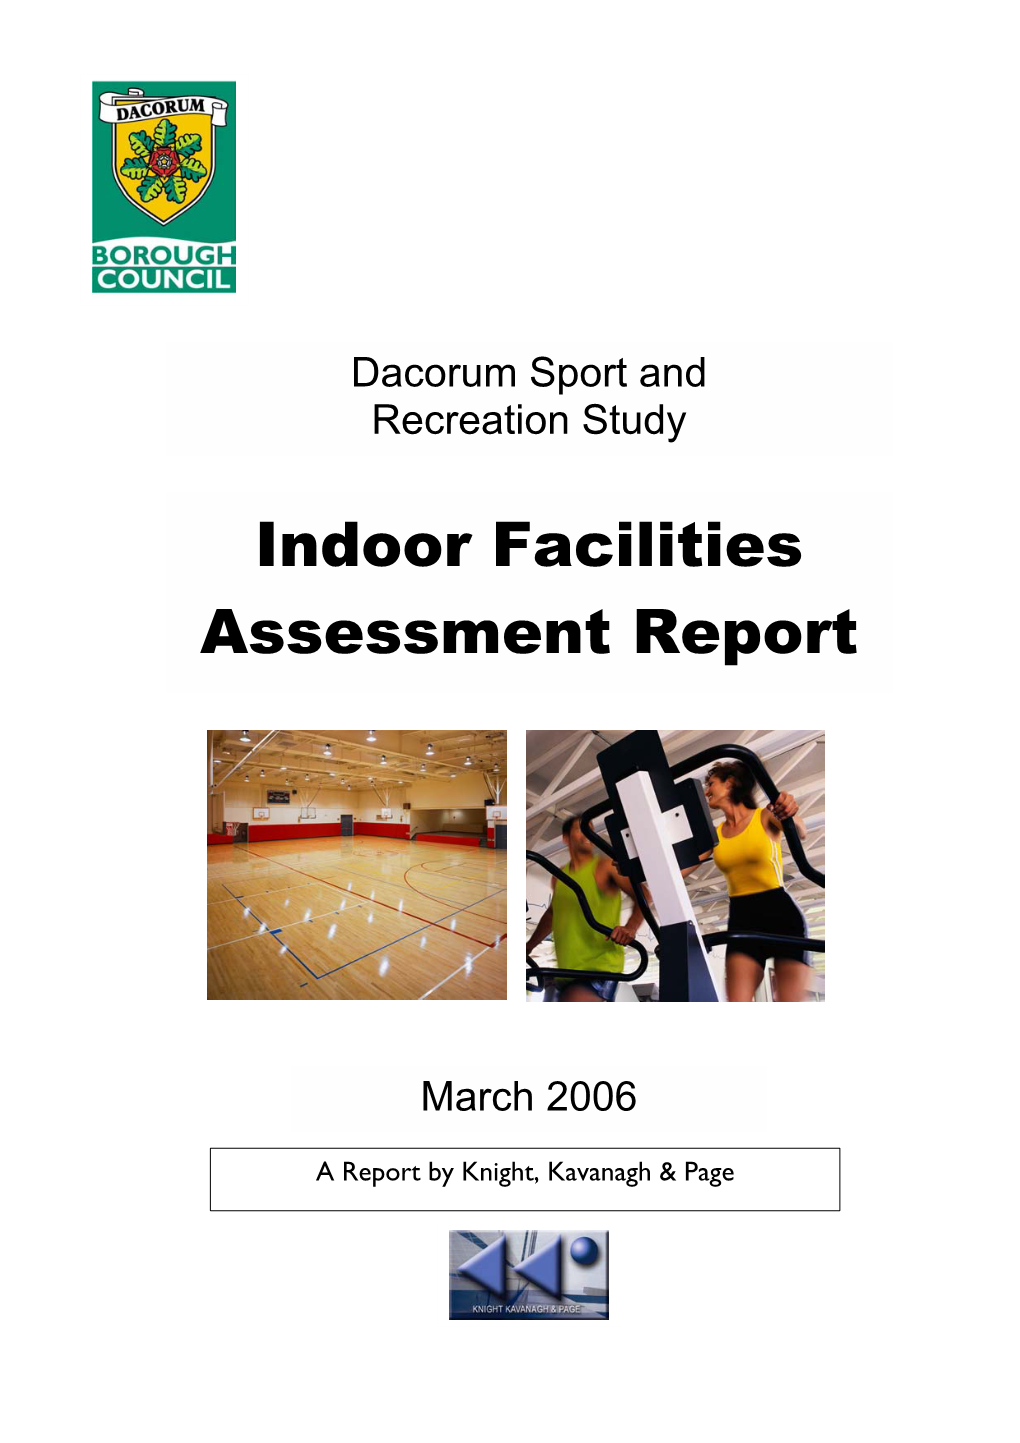 Indoor Facilities Assessment Report